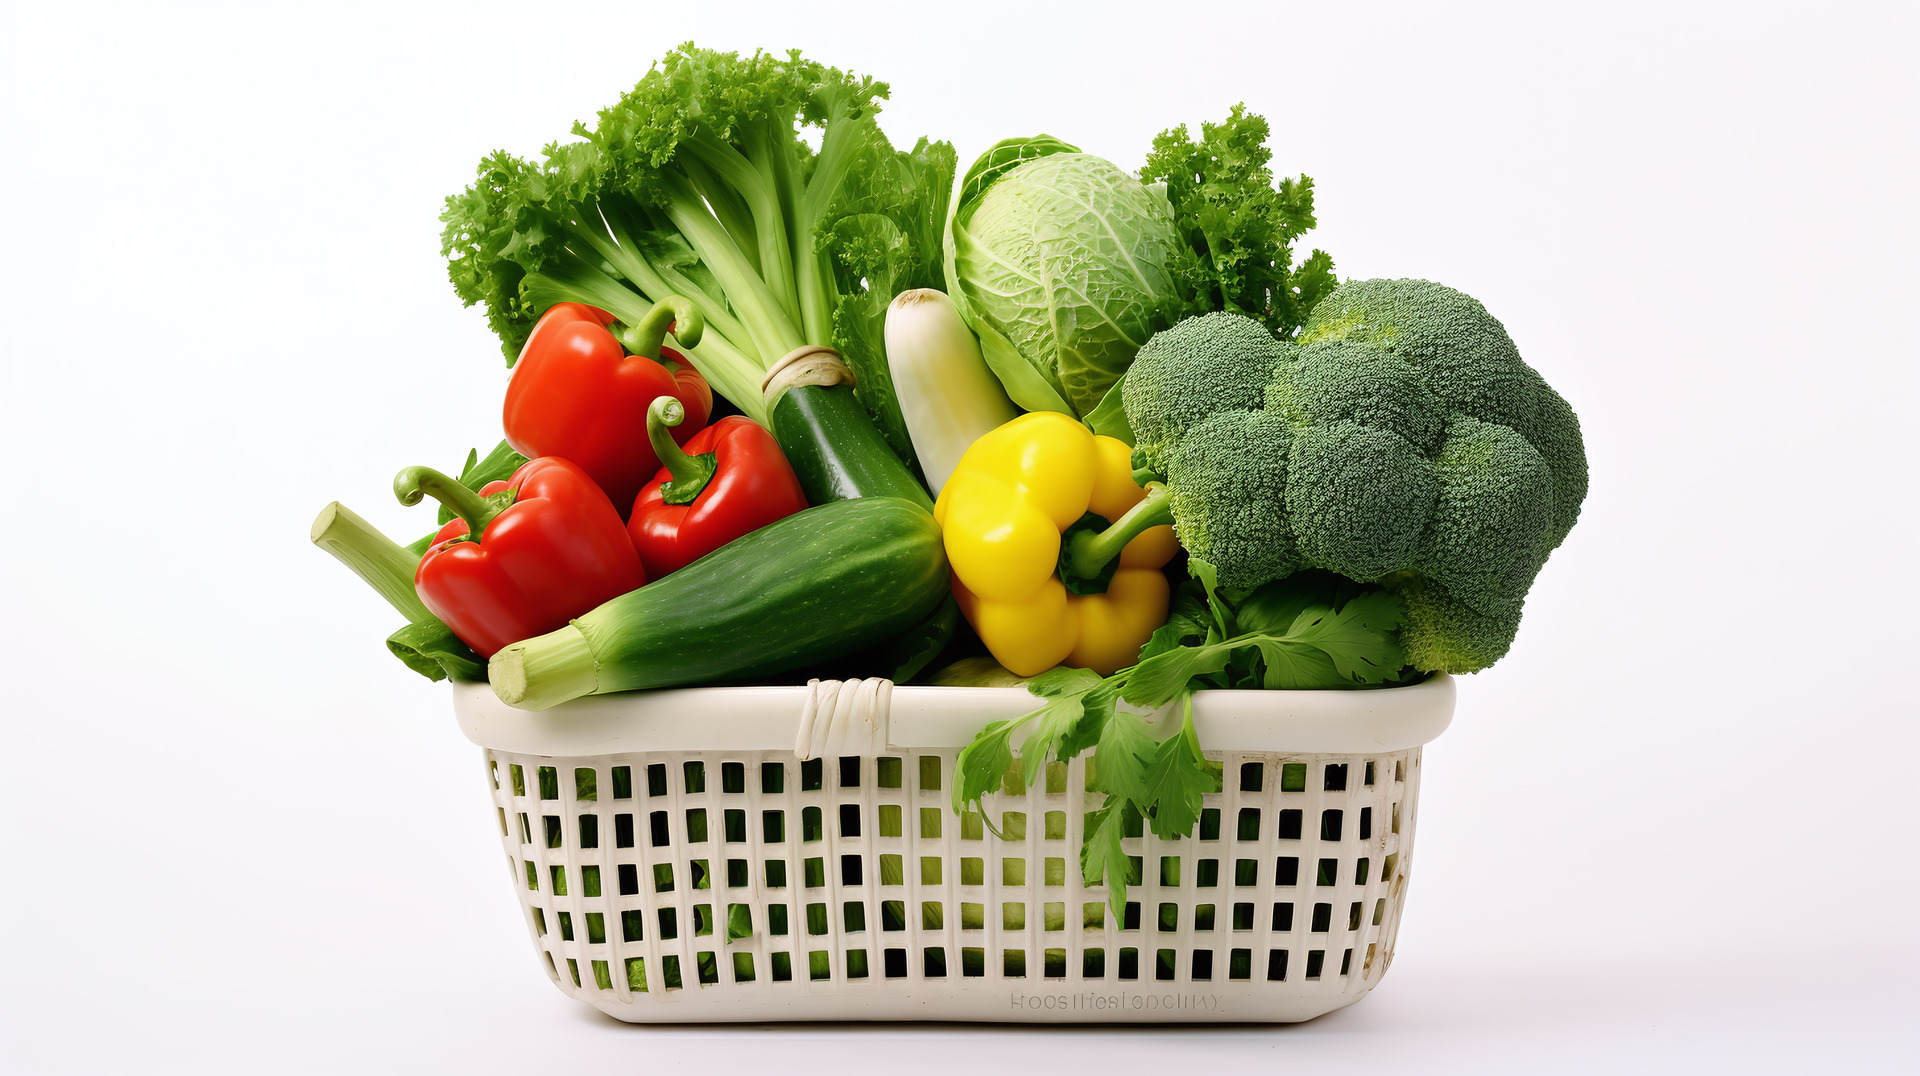 Biały koszyk zakupowy wypełniony kolorowymi warzywami, jako przykład diety wegetariańskiej